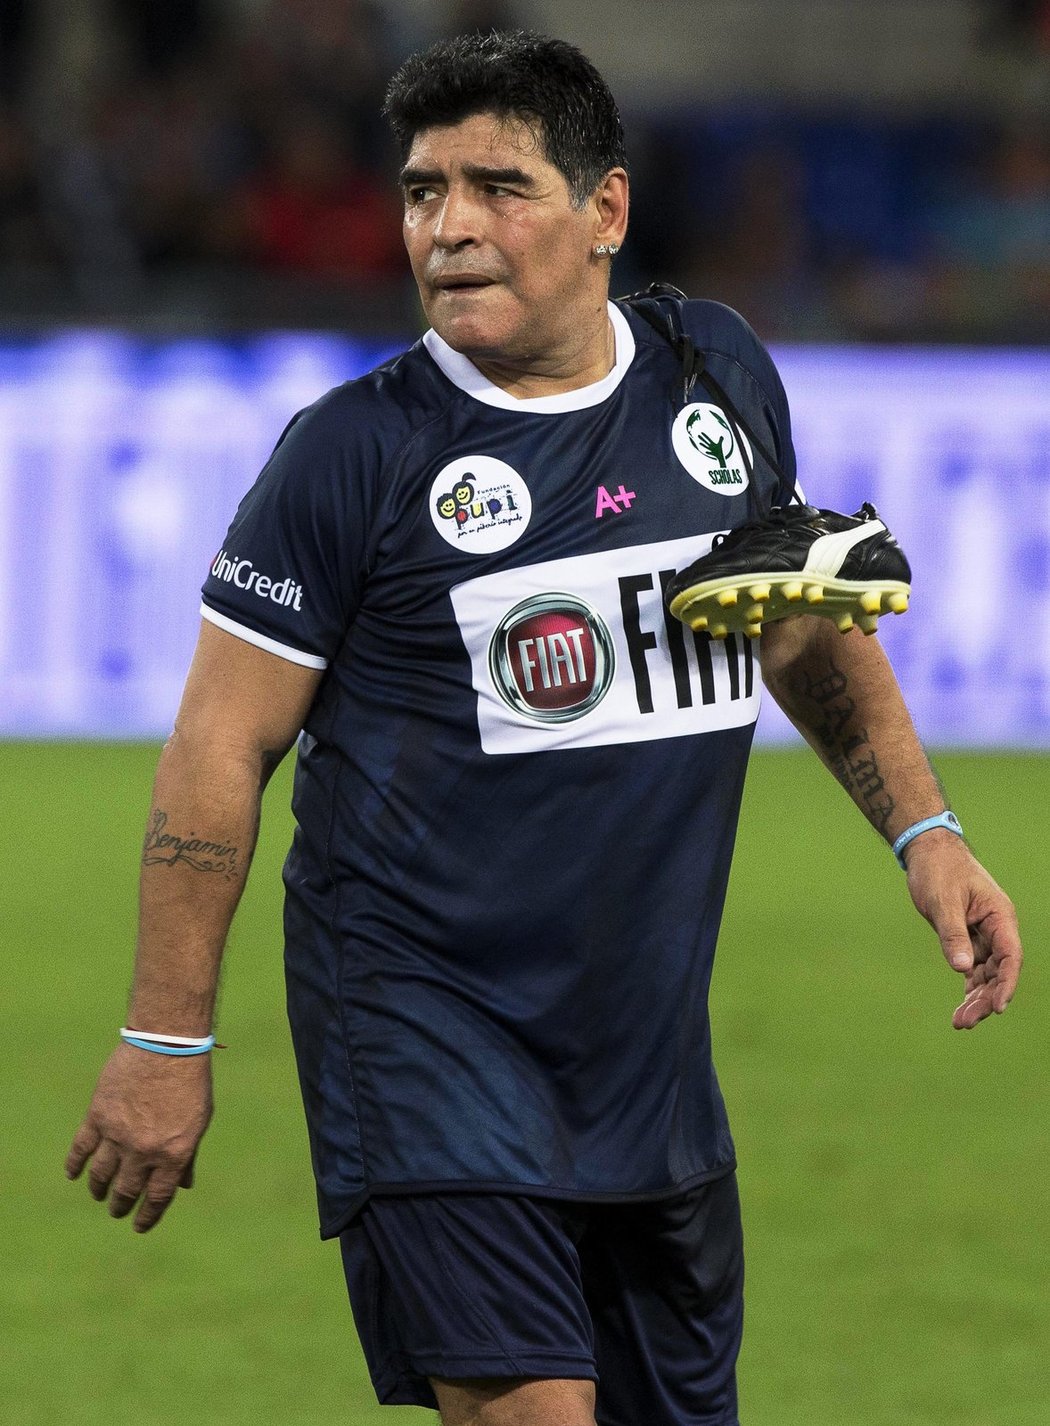 Argentinská legenda Diego Maradona se opět představil v Itálii na fotbalovém trávníku. Bývalá opora Neapole byla jednou z největších hvězd pondělního charitativního utkání v Římě, jehož se zúčastnily další osobnosti jako Roberto Baggio, Andrej Ševčenko či kouč Arséne Wenger.